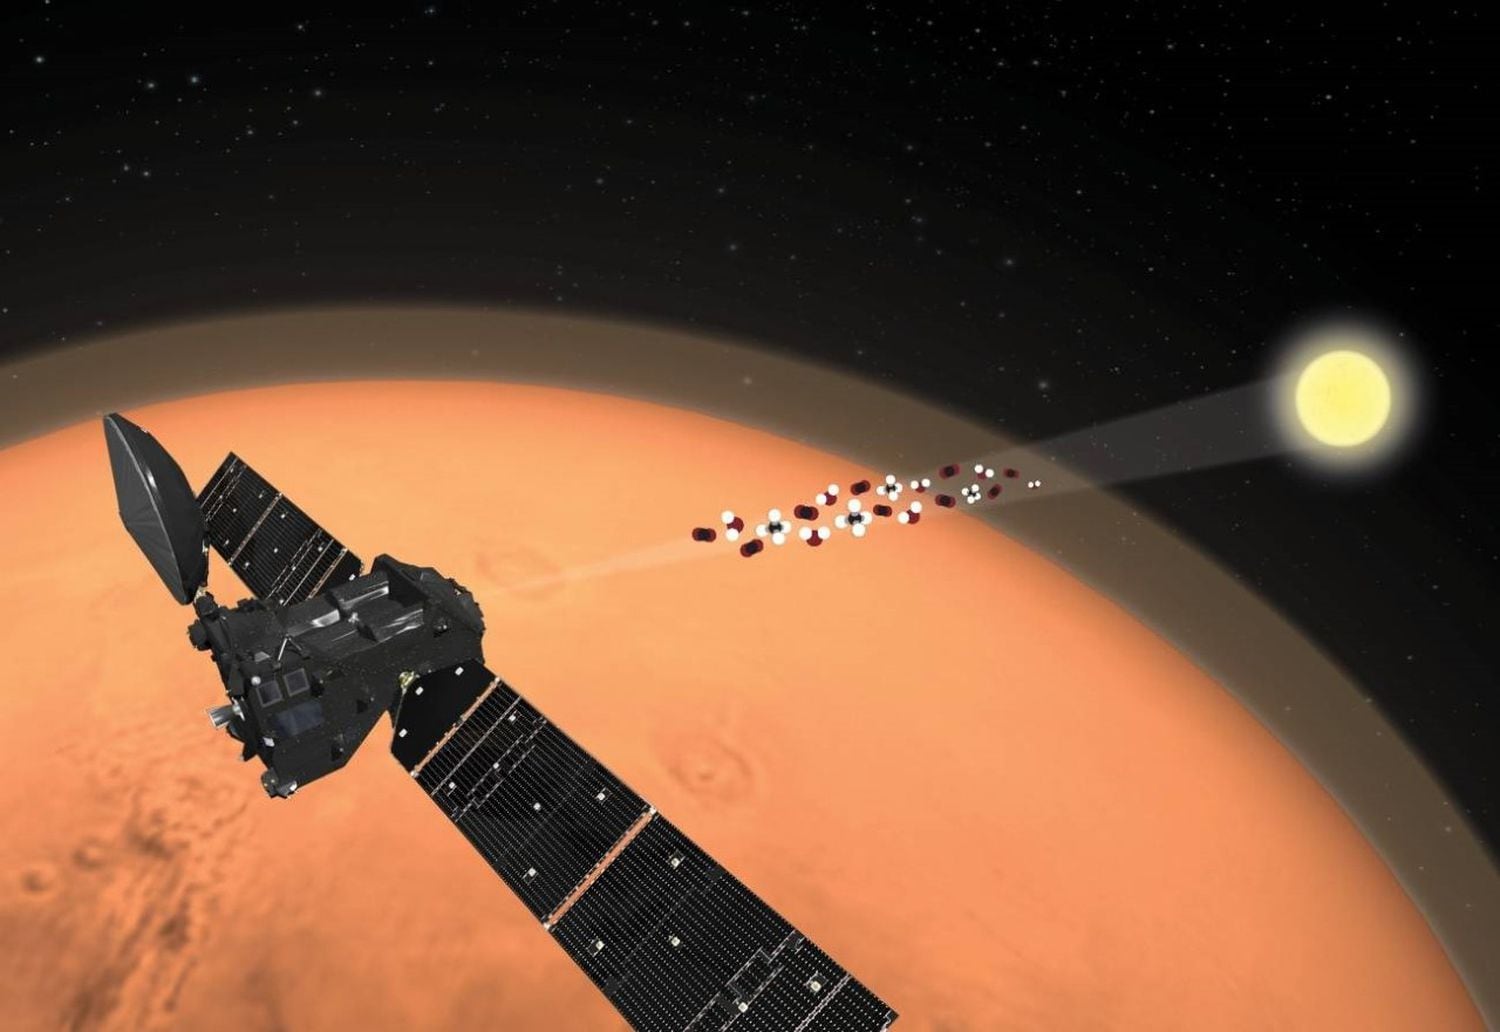 Recriação da mudança de orientação do NOMAD que permitiu a detecção do traço de oxigênio na atmosfera de Marte.